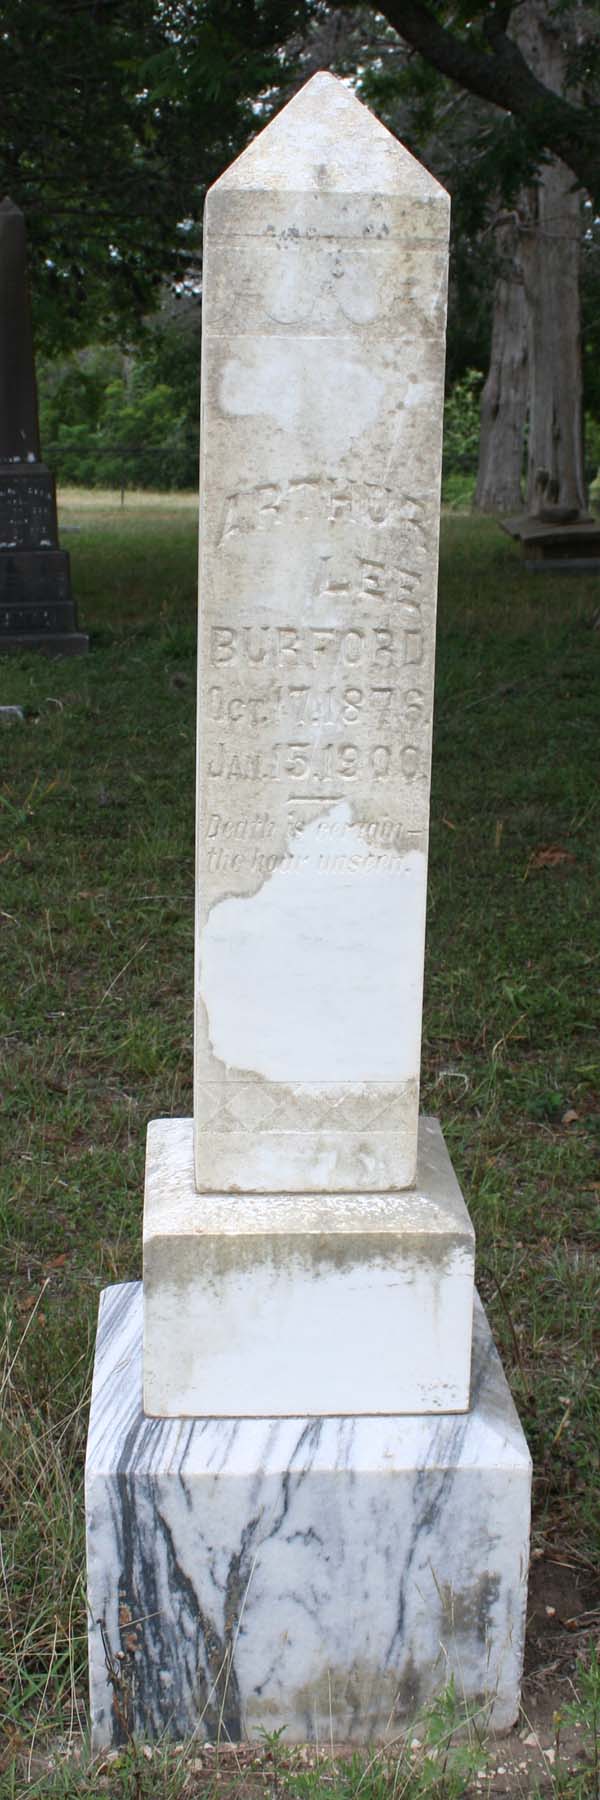 Arthur Lee Burford tombstone